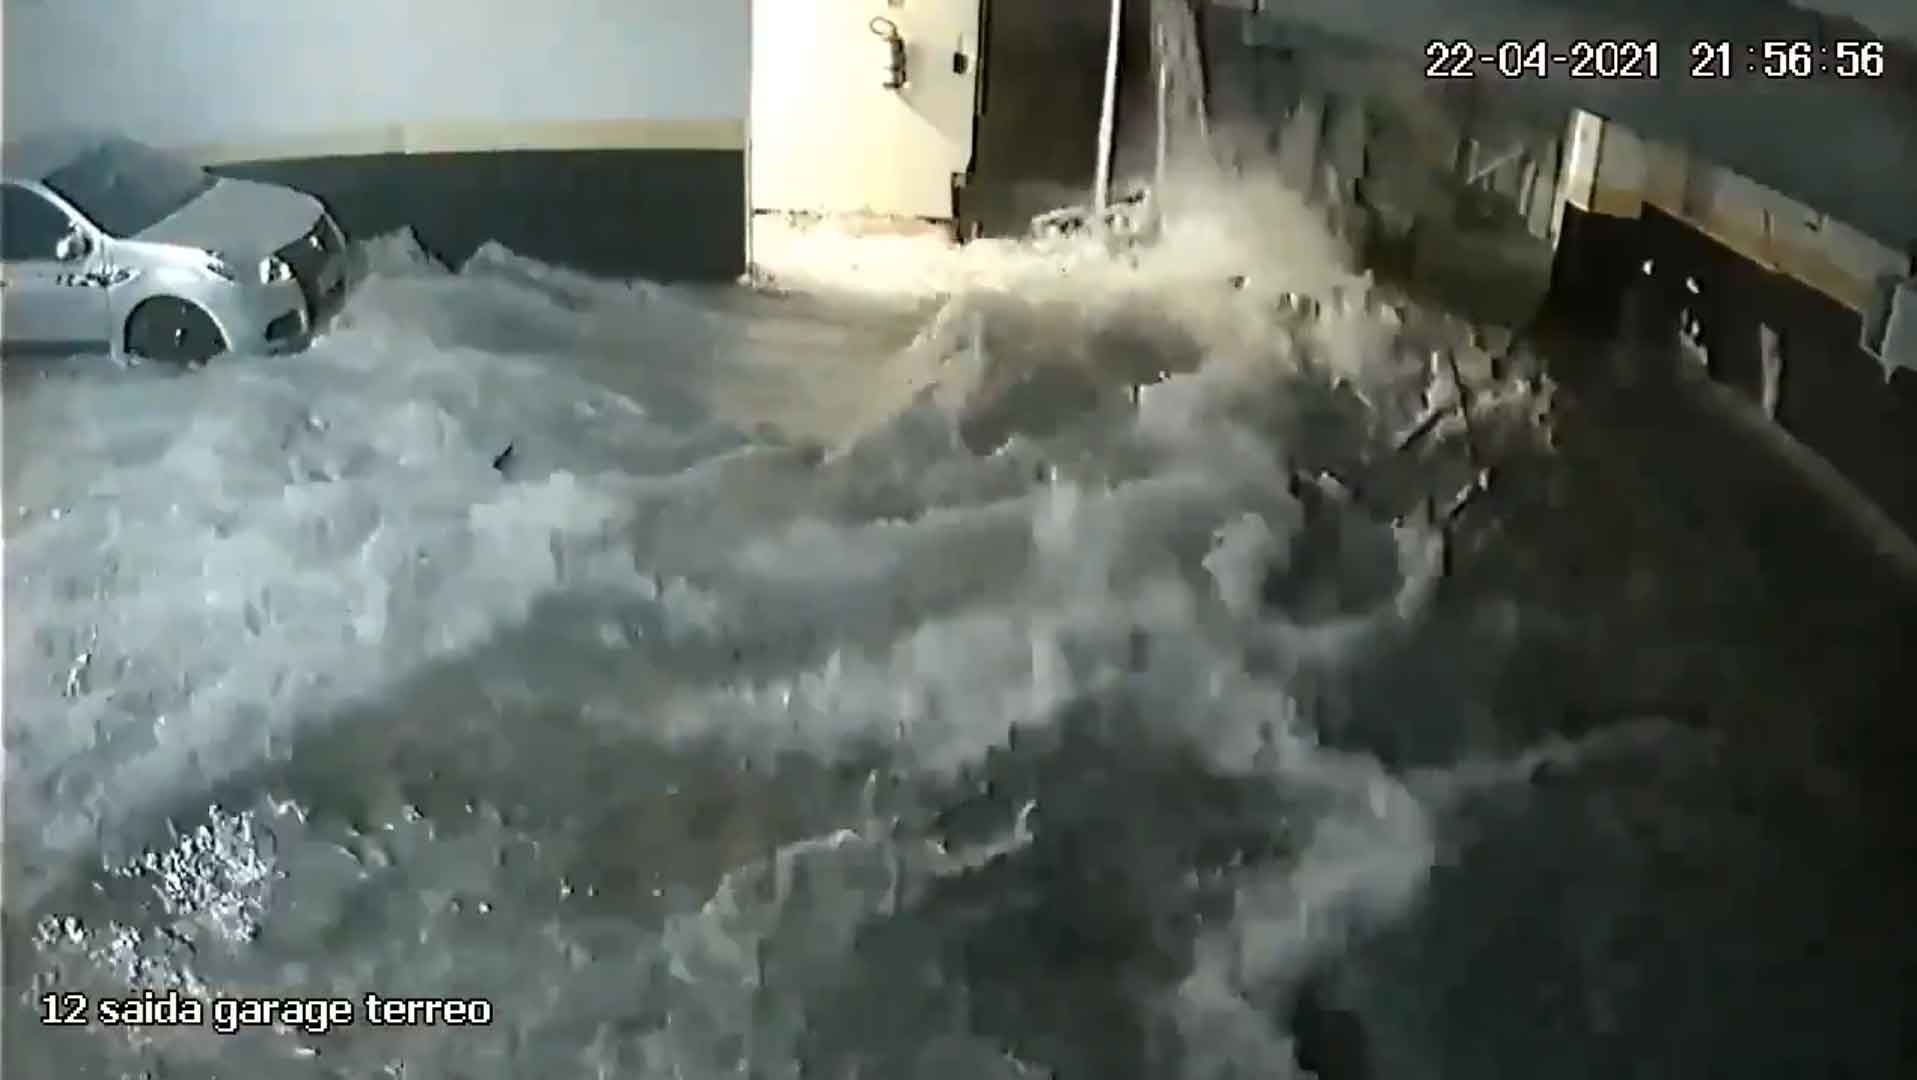 Piscina desaba sobre a garagem em edifício de luxo no ES; Veja o vídeo. Foto: Reprodução Twitter